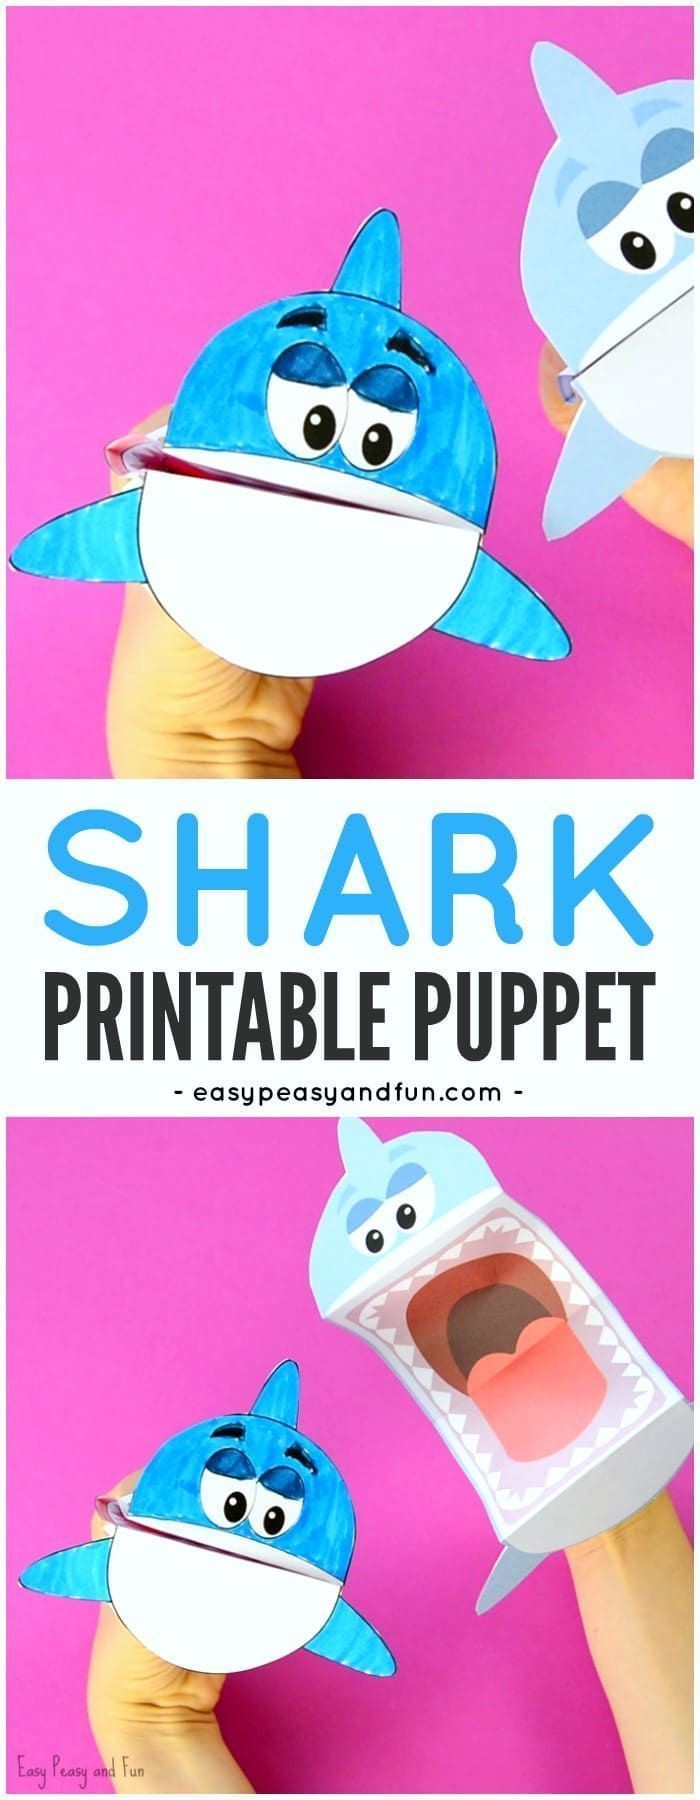 Papercraft Crown Printable Shark Puppet Art Kids Diys Pinterest